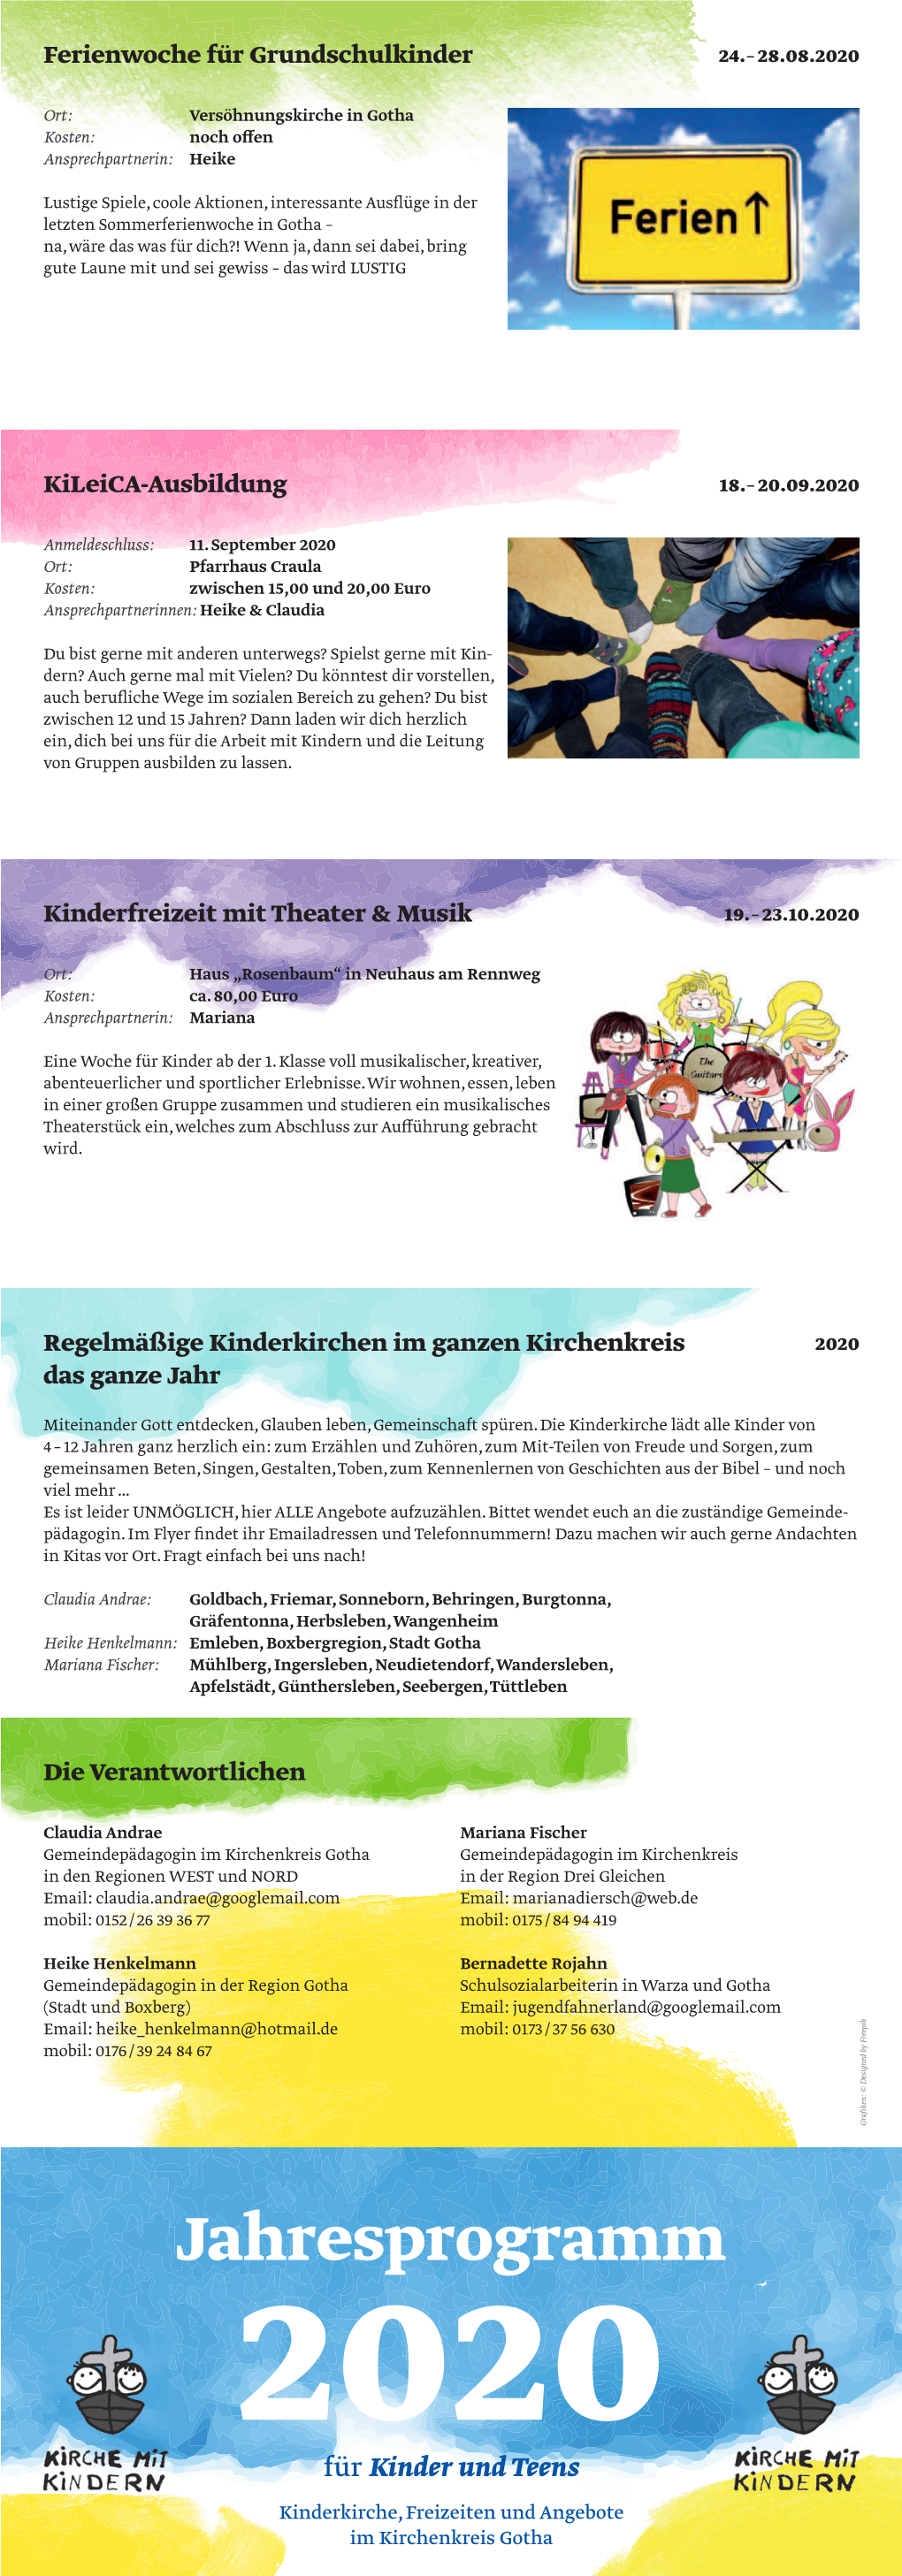 Jahresprogramm 2020 Für Kinder Und Teens Kinderkirche, Freizeiten Und Angebote Im Kirchenkreis Gotha Church–Night Mit Claudia & Anne 6